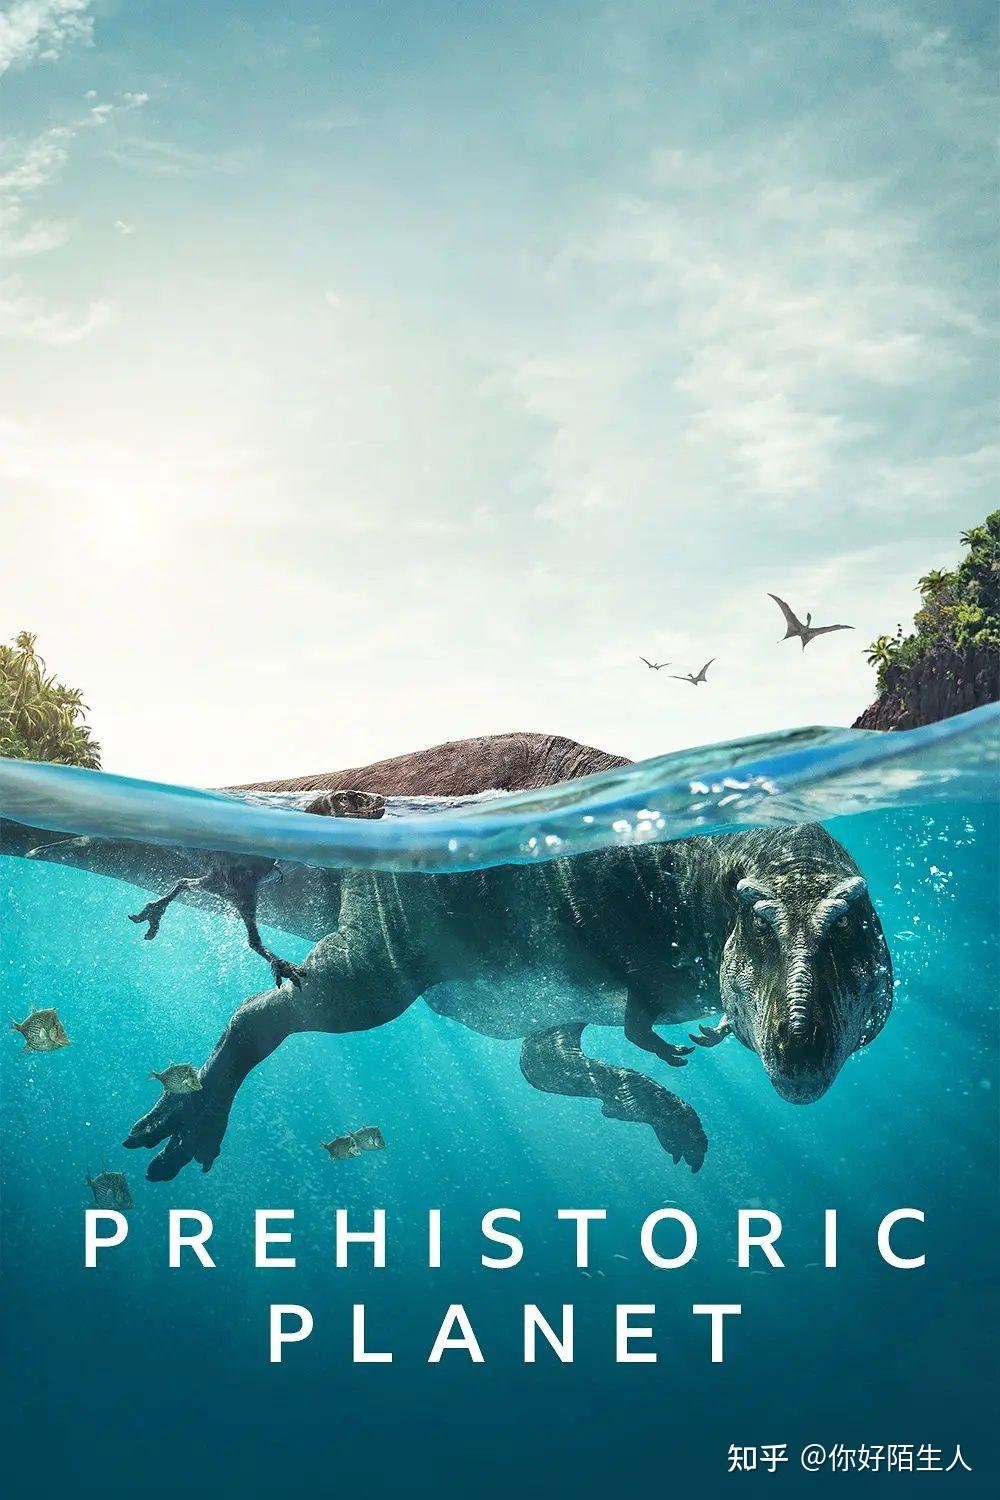 如何评价《史前星球》 prehistoric planet (2022)这套恐龙纪录片?